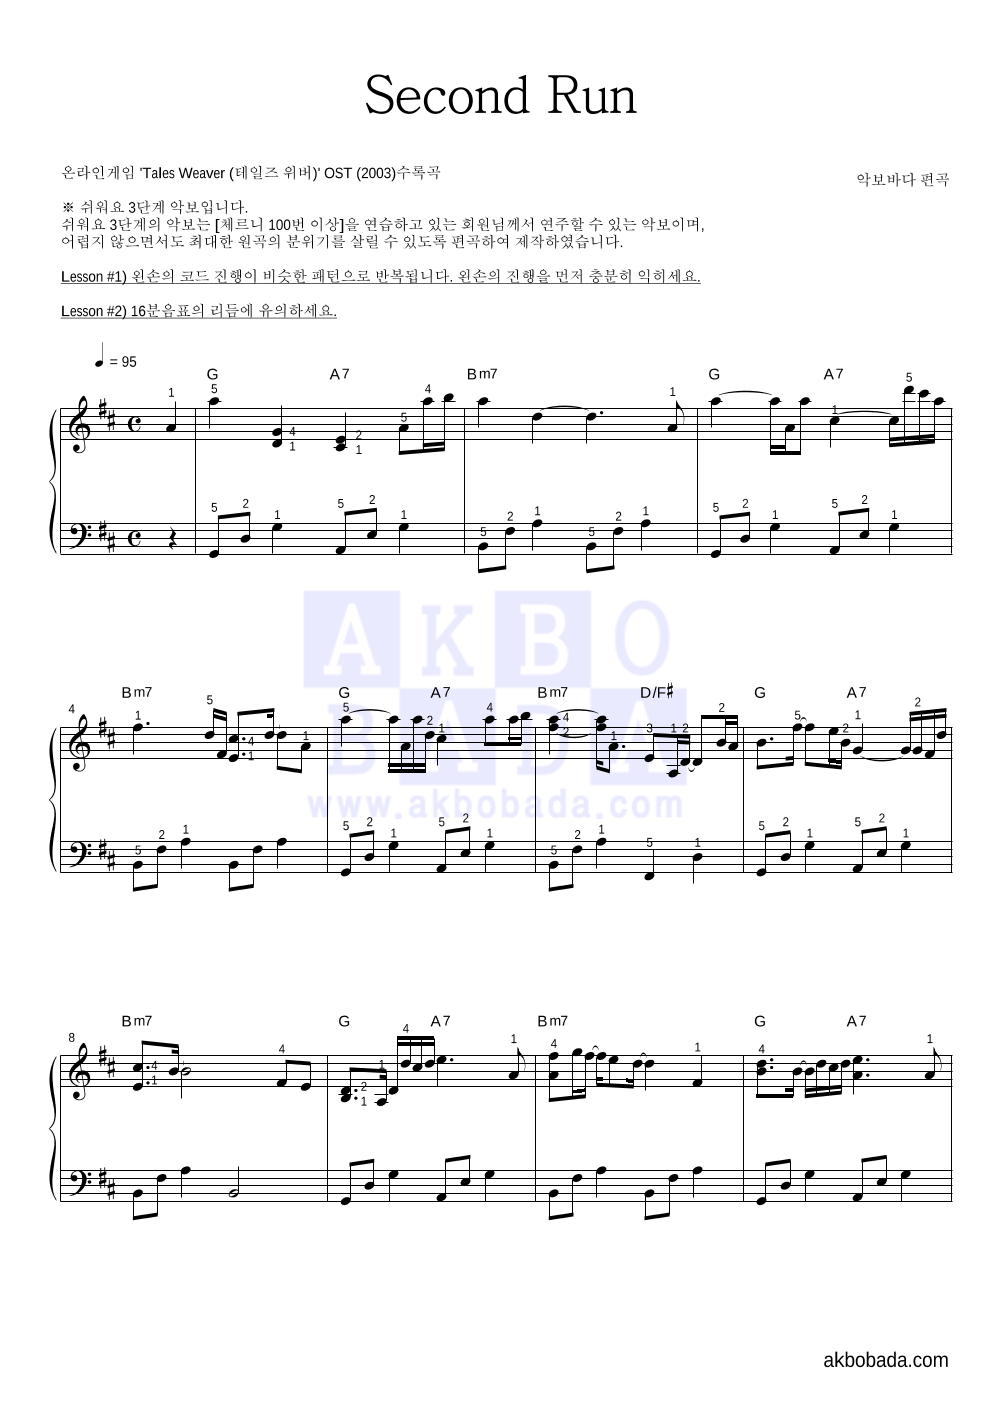 테일즈위버 OST - Second Run 피아노2단-쉬워요 악보 